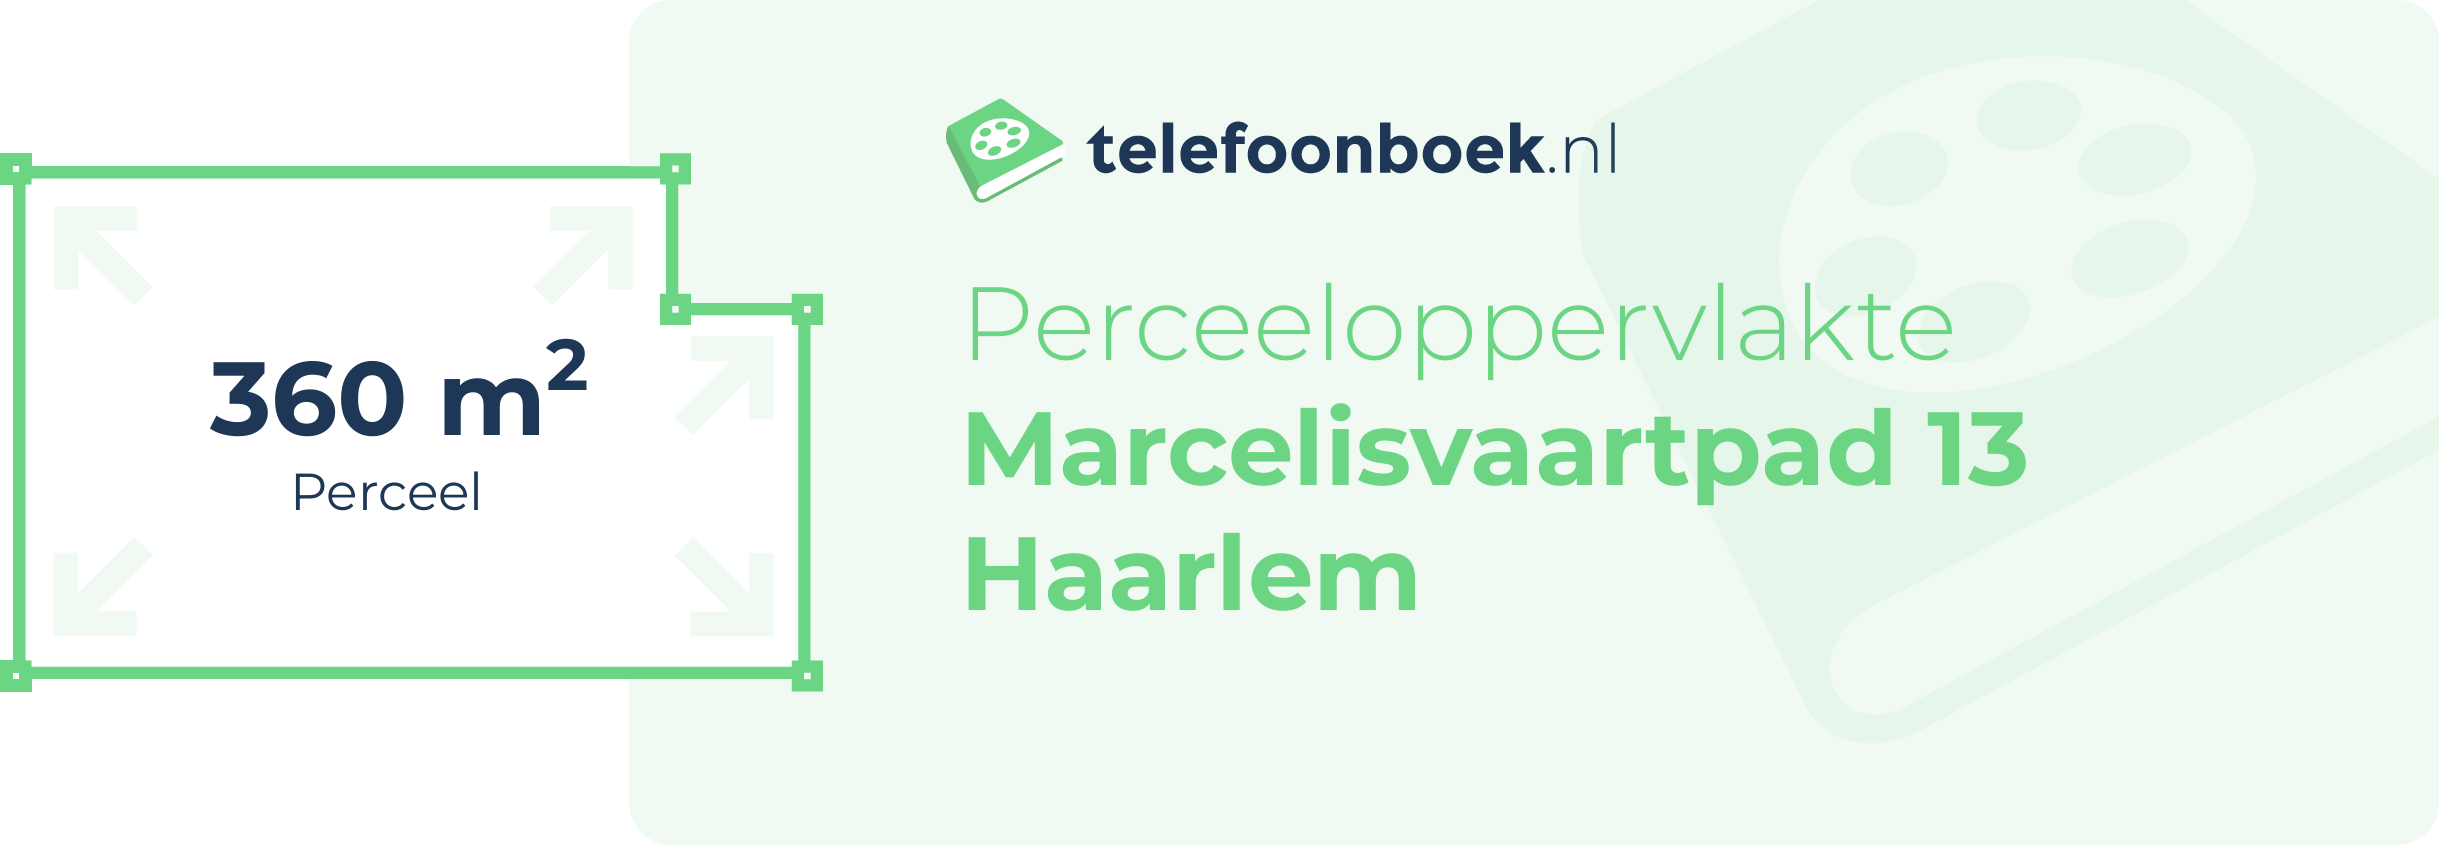 Perceeloppervlakte Marcelisvaartpad 13 Haarlem